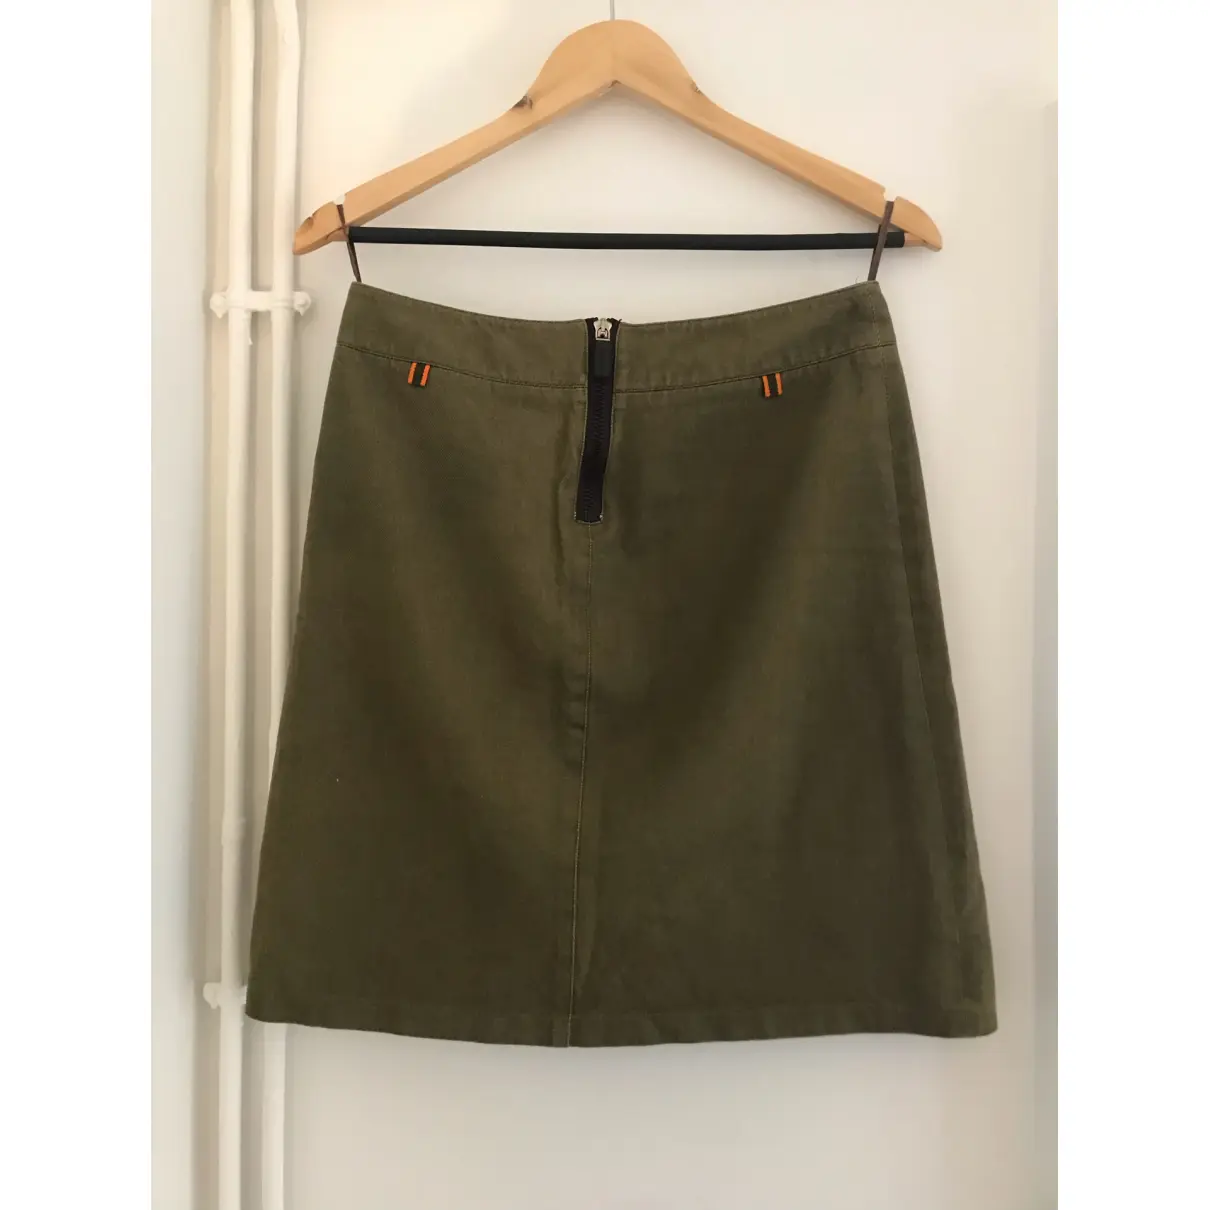 Buy Miu Miu Mid-length skirt online - Vintage